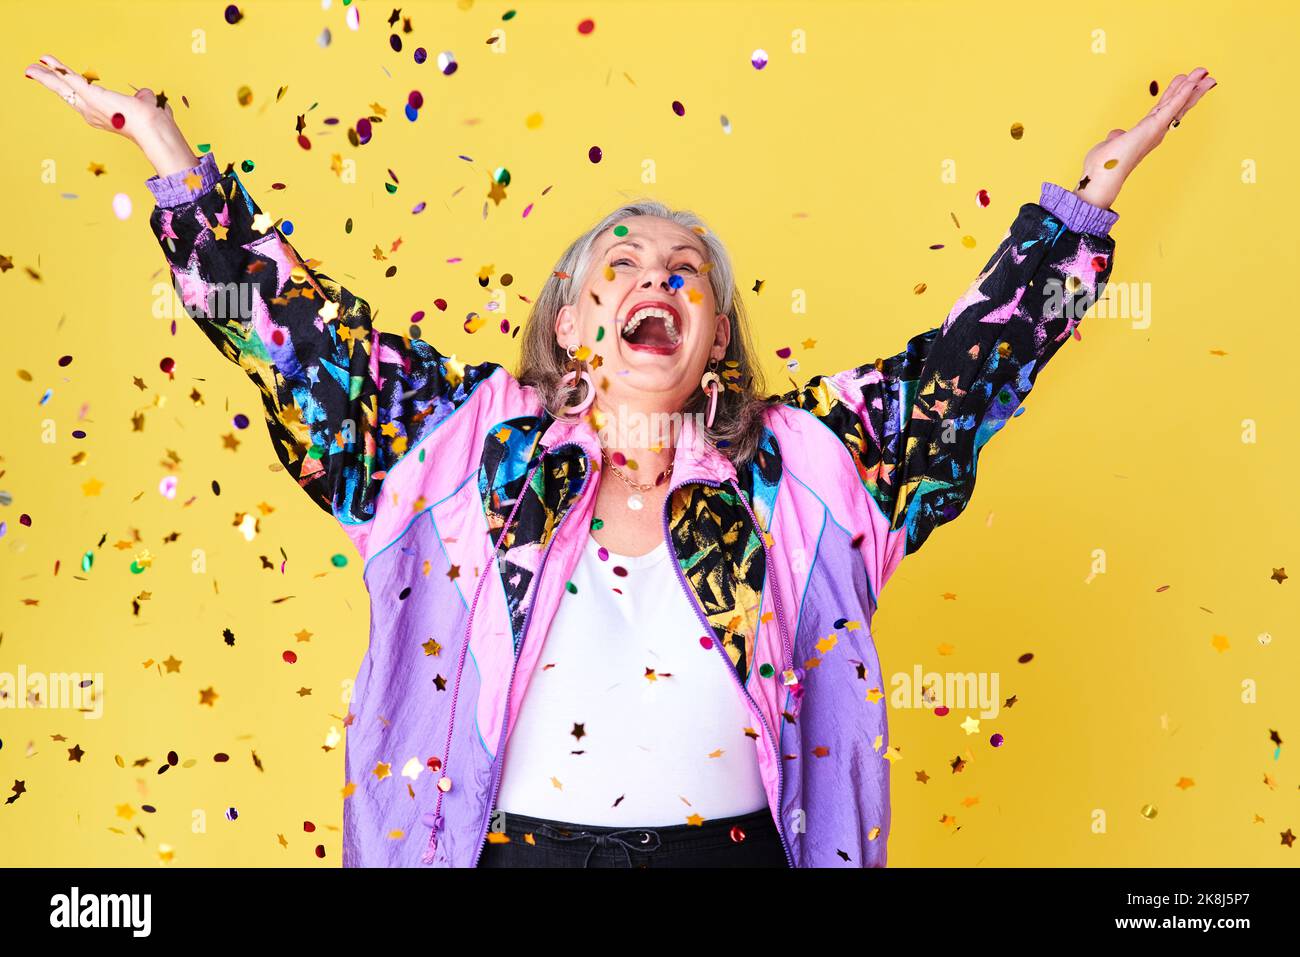 La pioggia di confetti è il mio clima preferito: Una donna anziana allegra ed elegante che festeggia con i confetti che cadono sopra di lei contro un giallo Foto Stock